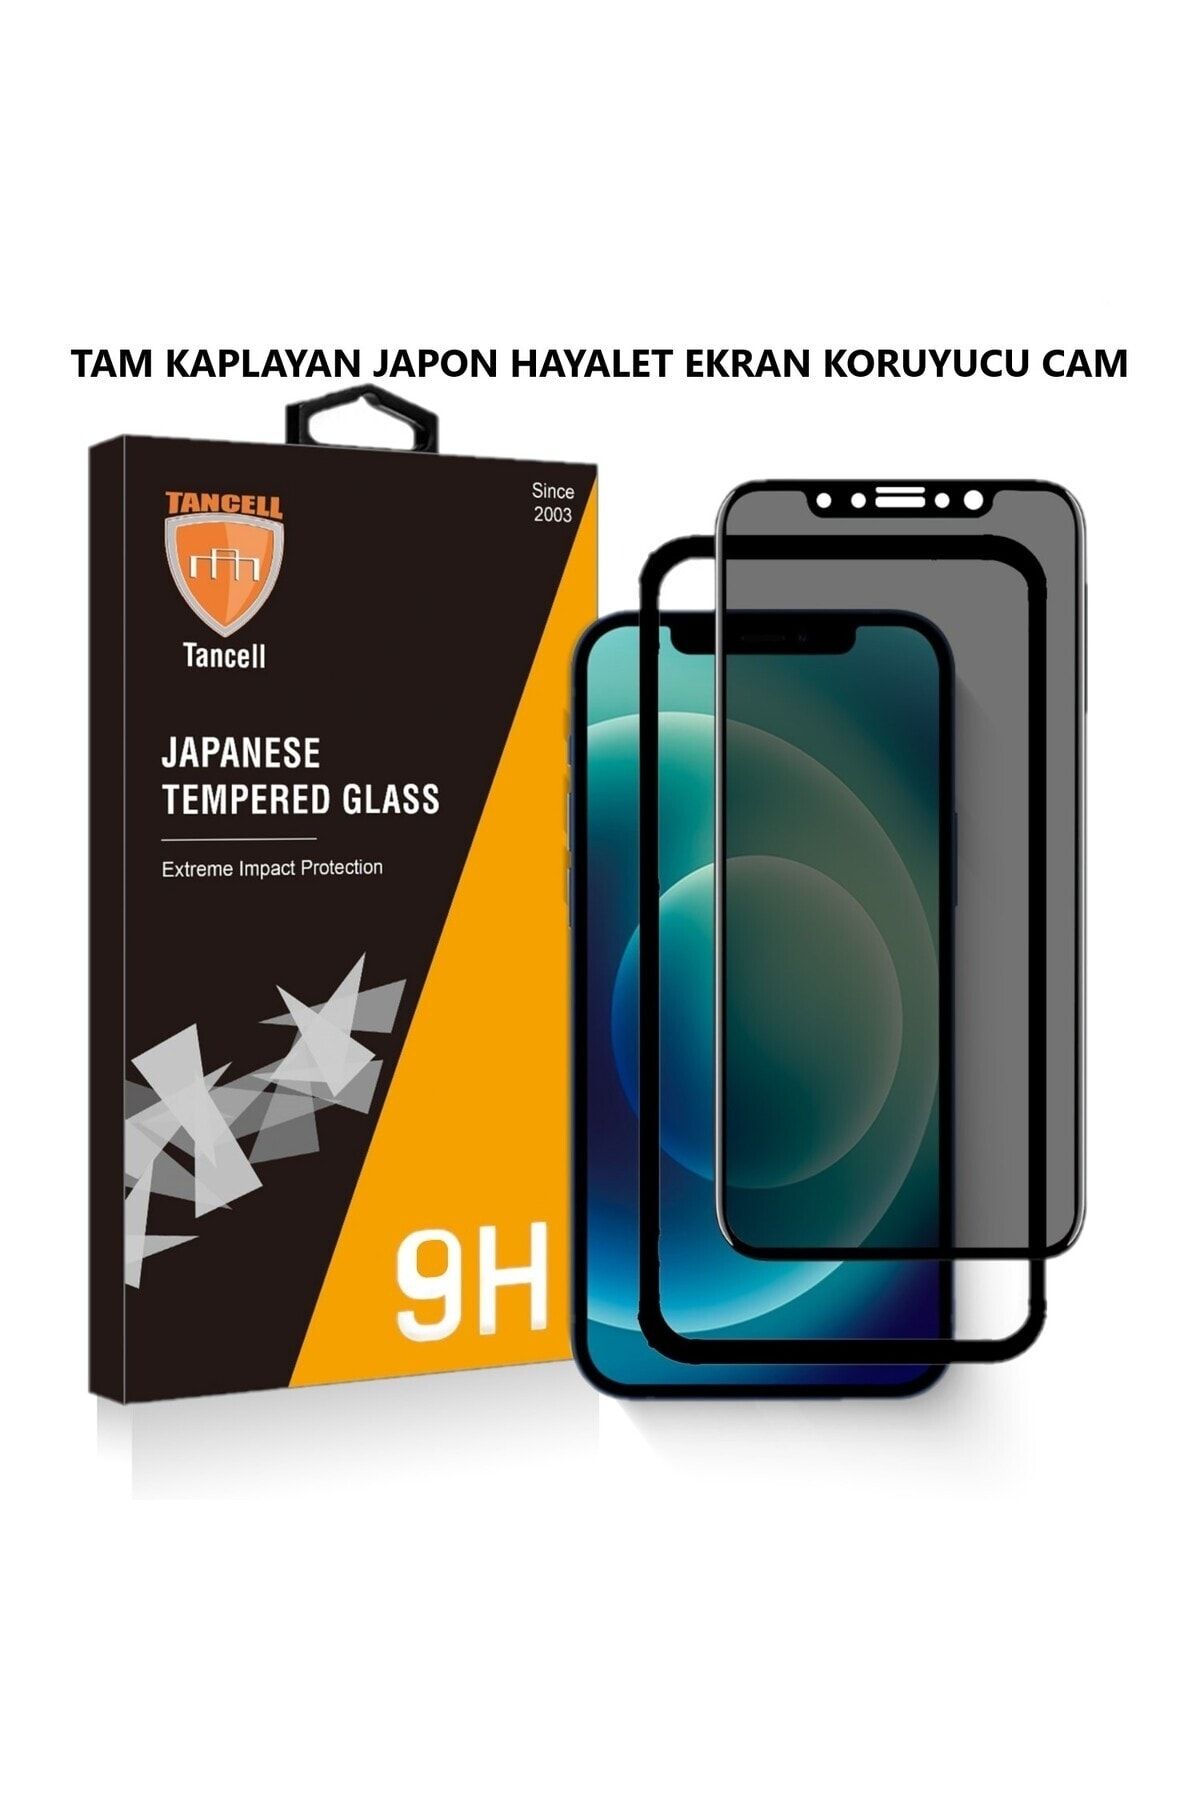 TANCELL İphone 13/13 Pro Uyumlu Hayalet Ekran Koruyucu Tam Kaplayan Japon Kırılmaz Cam 6,1 Inc (2 Adet )